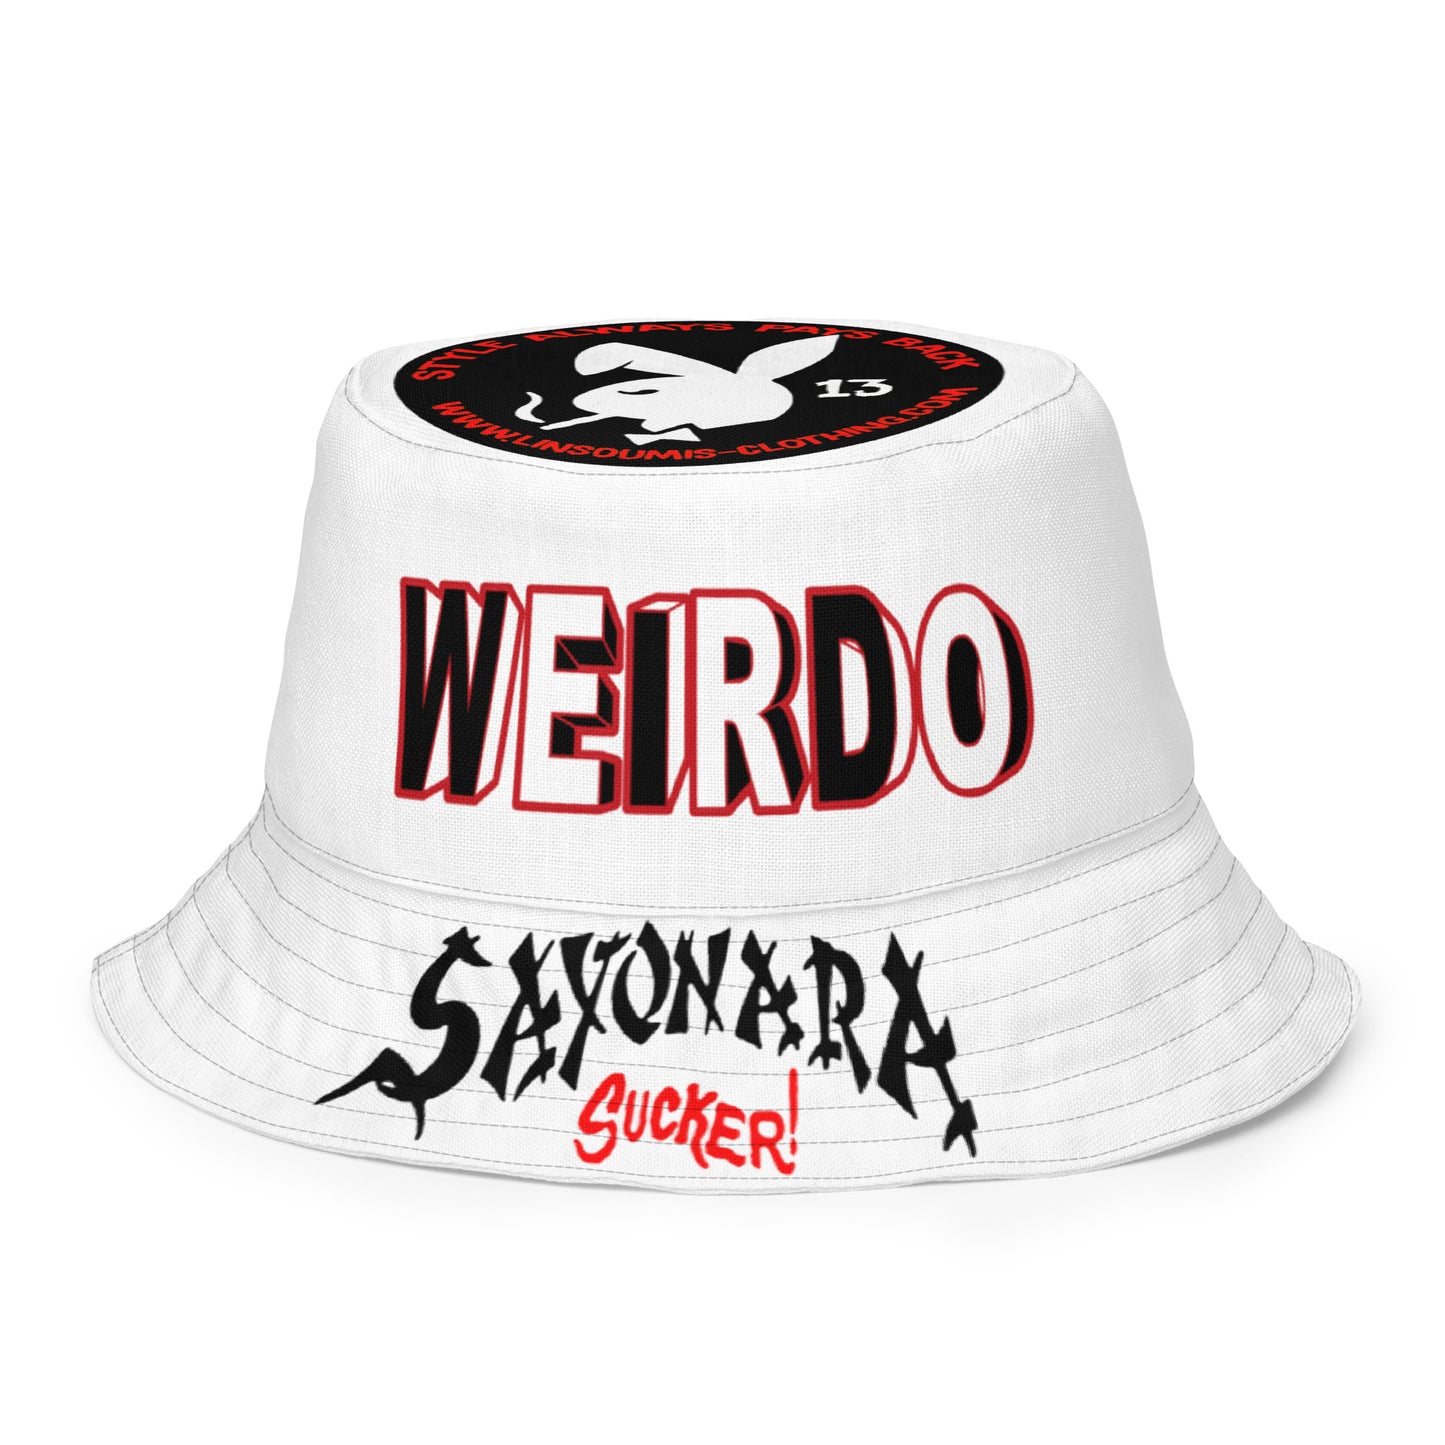 Weirdo bucket hat / bob